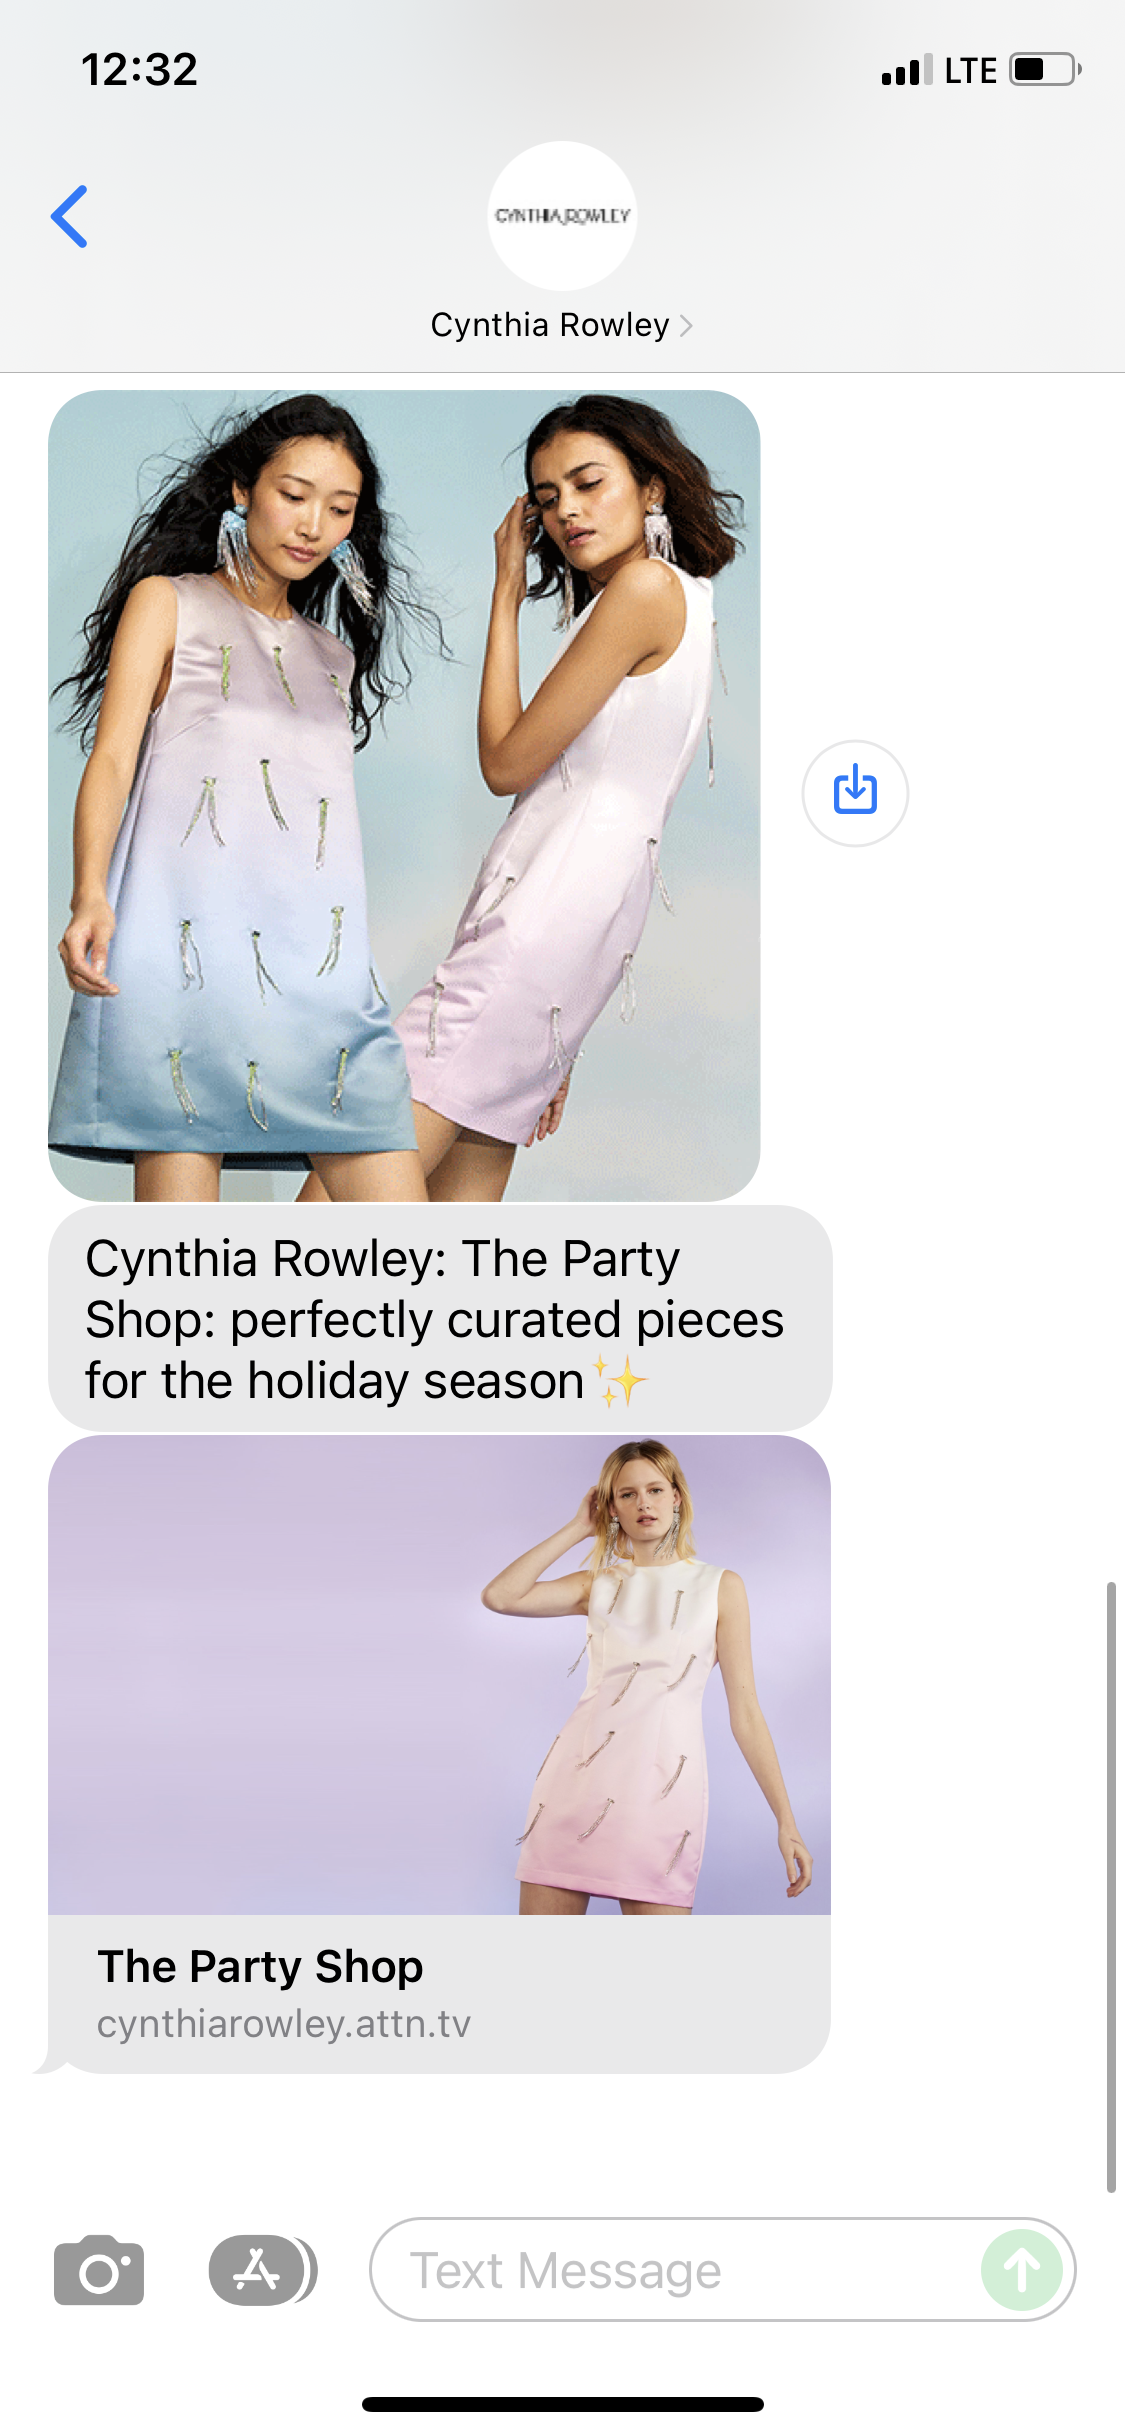 Where to Buy – Cynthia Rowley